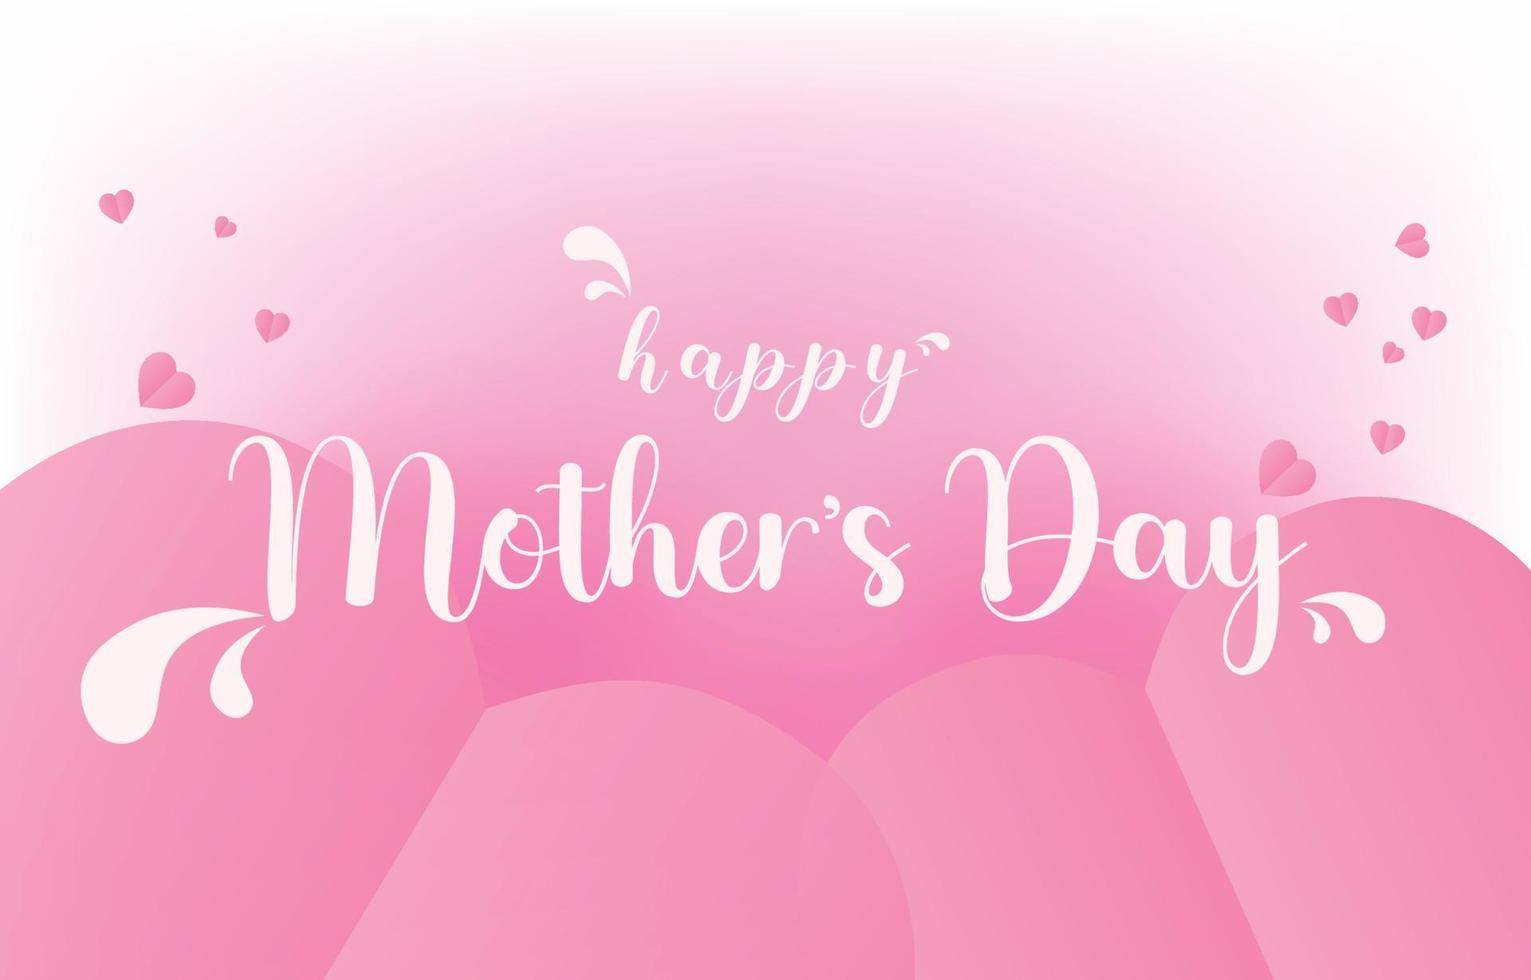 dia das mães cartão banner vetor com 3d corações voadores rosa papercut.symbol de amor e cartas manuscritas no fundo rosa.